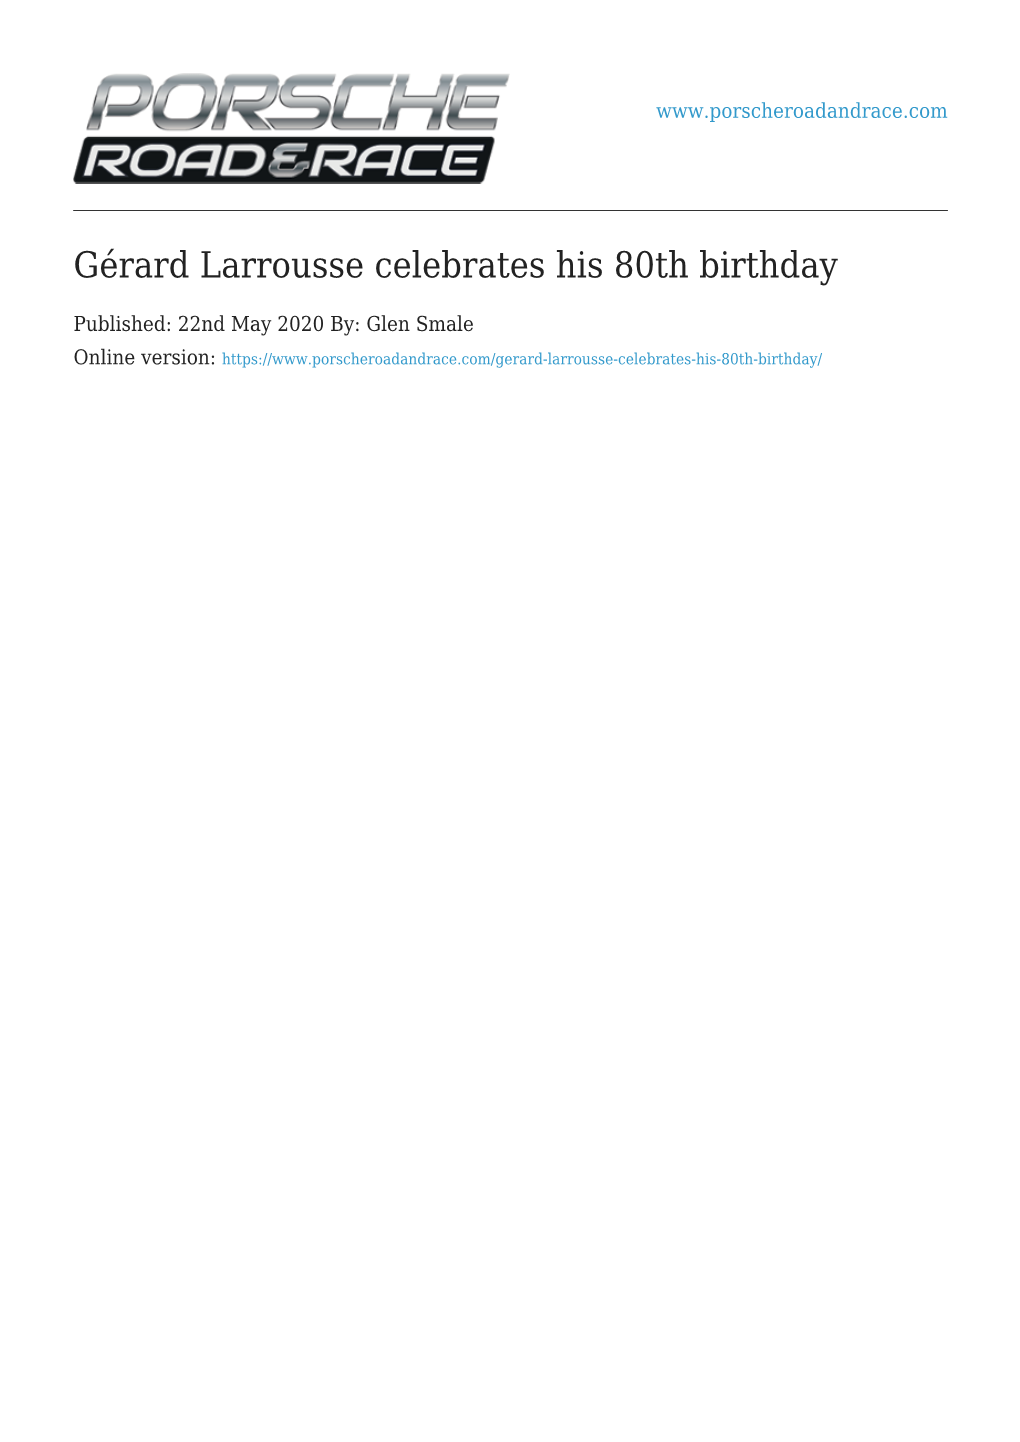 Gérard Larrousse Celebrates His 80Th Birthday